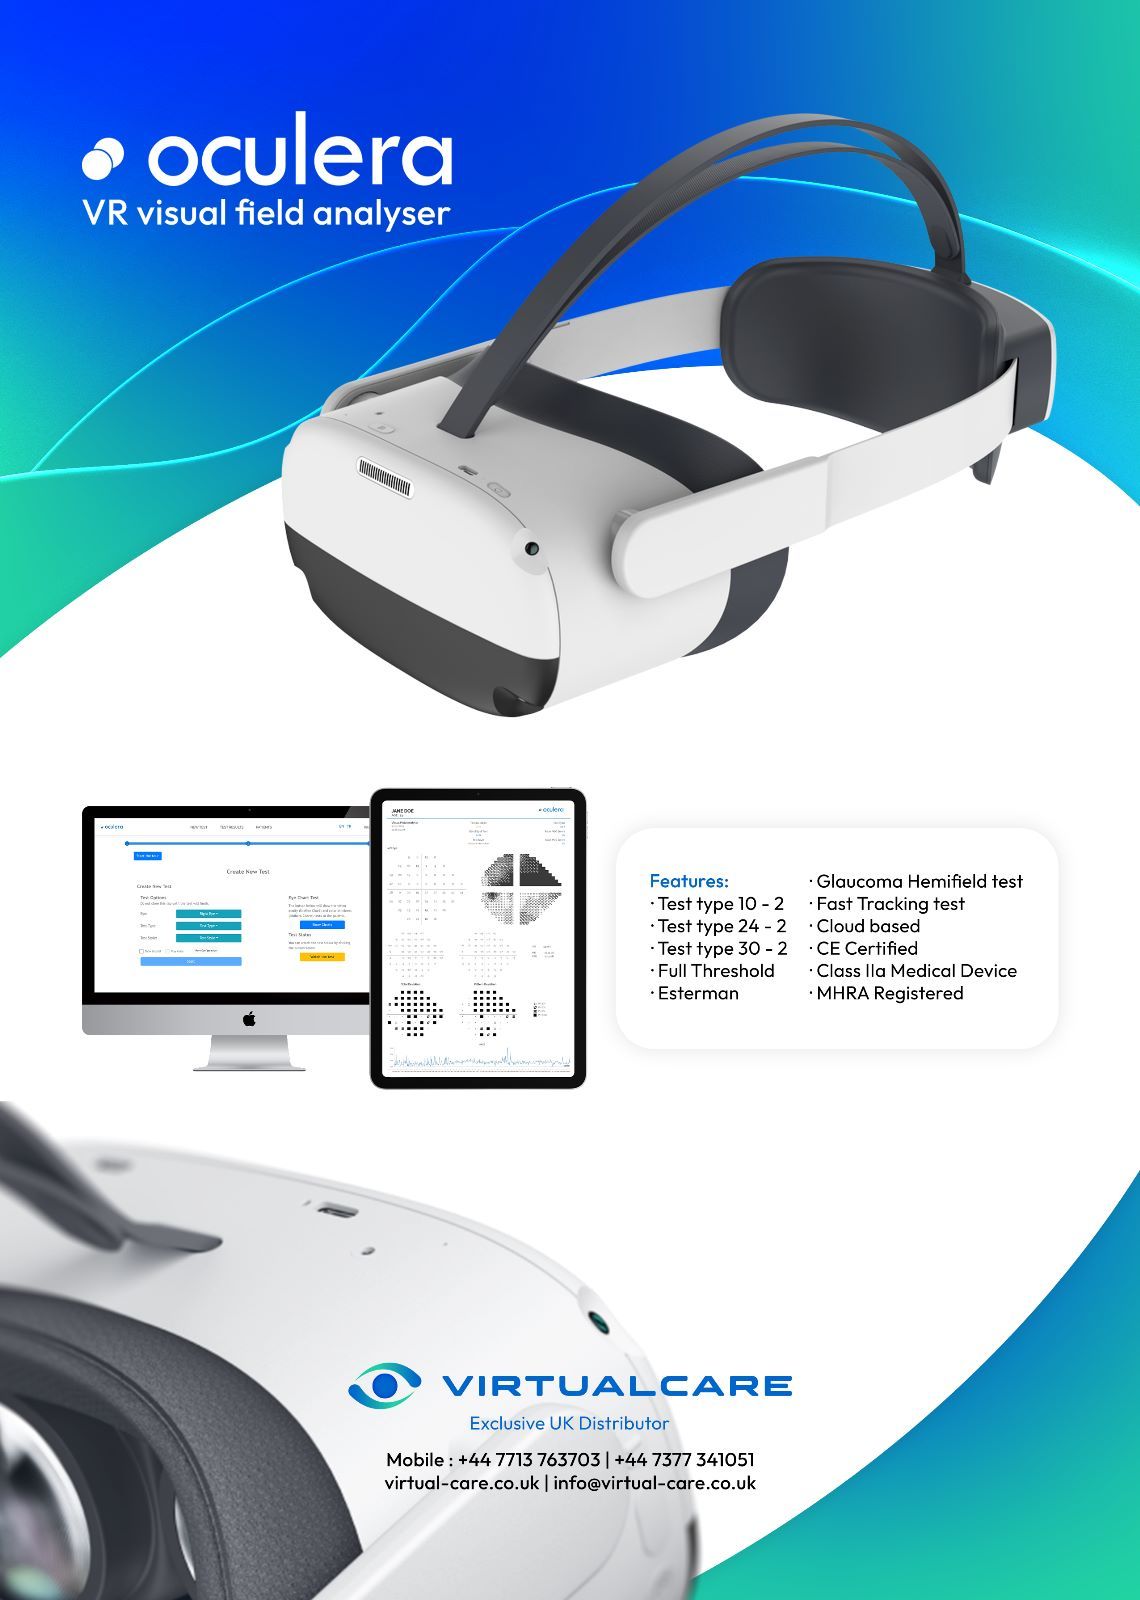 Virtualcare presents Oculera VR Visual Field